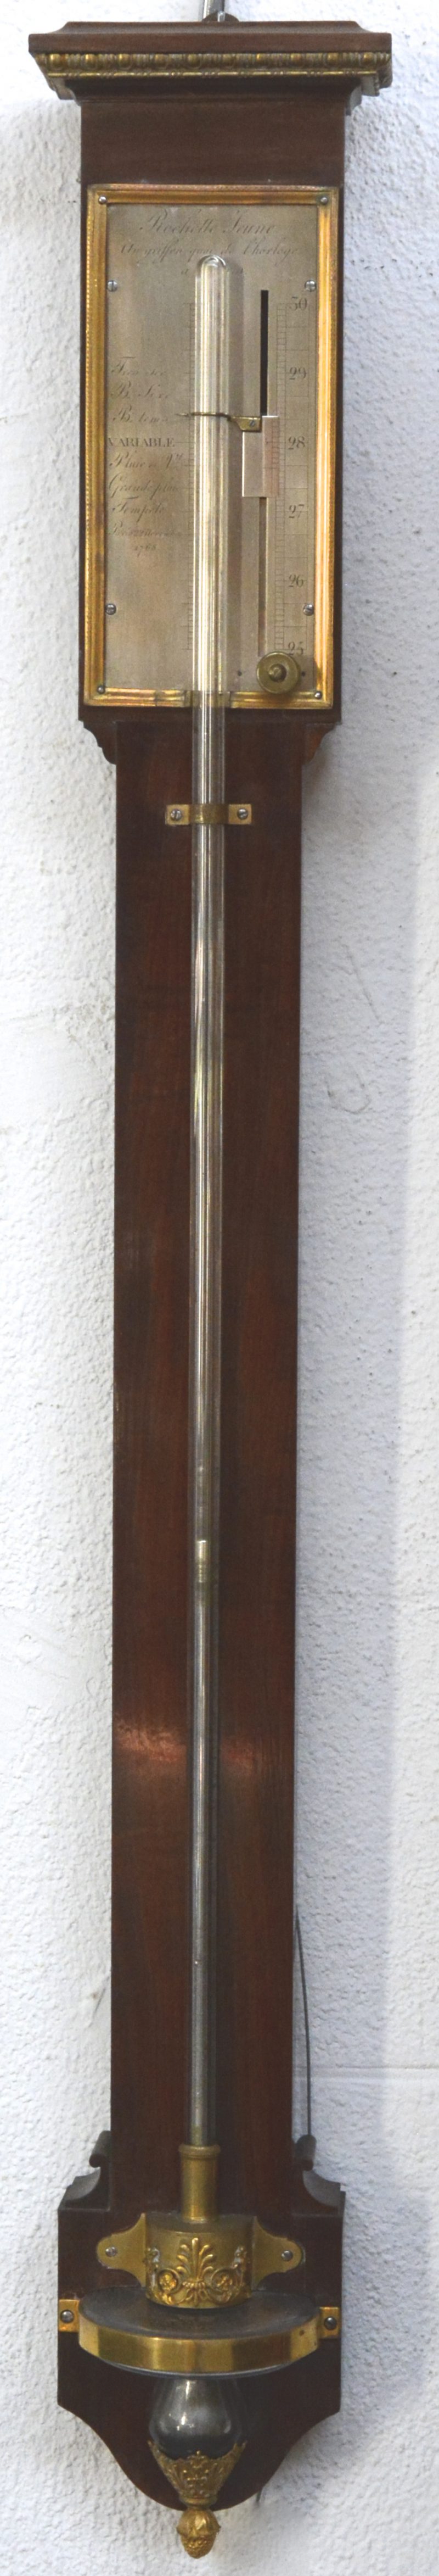 Een mahoniehouten staafbarometer. Gedateerd 1768.